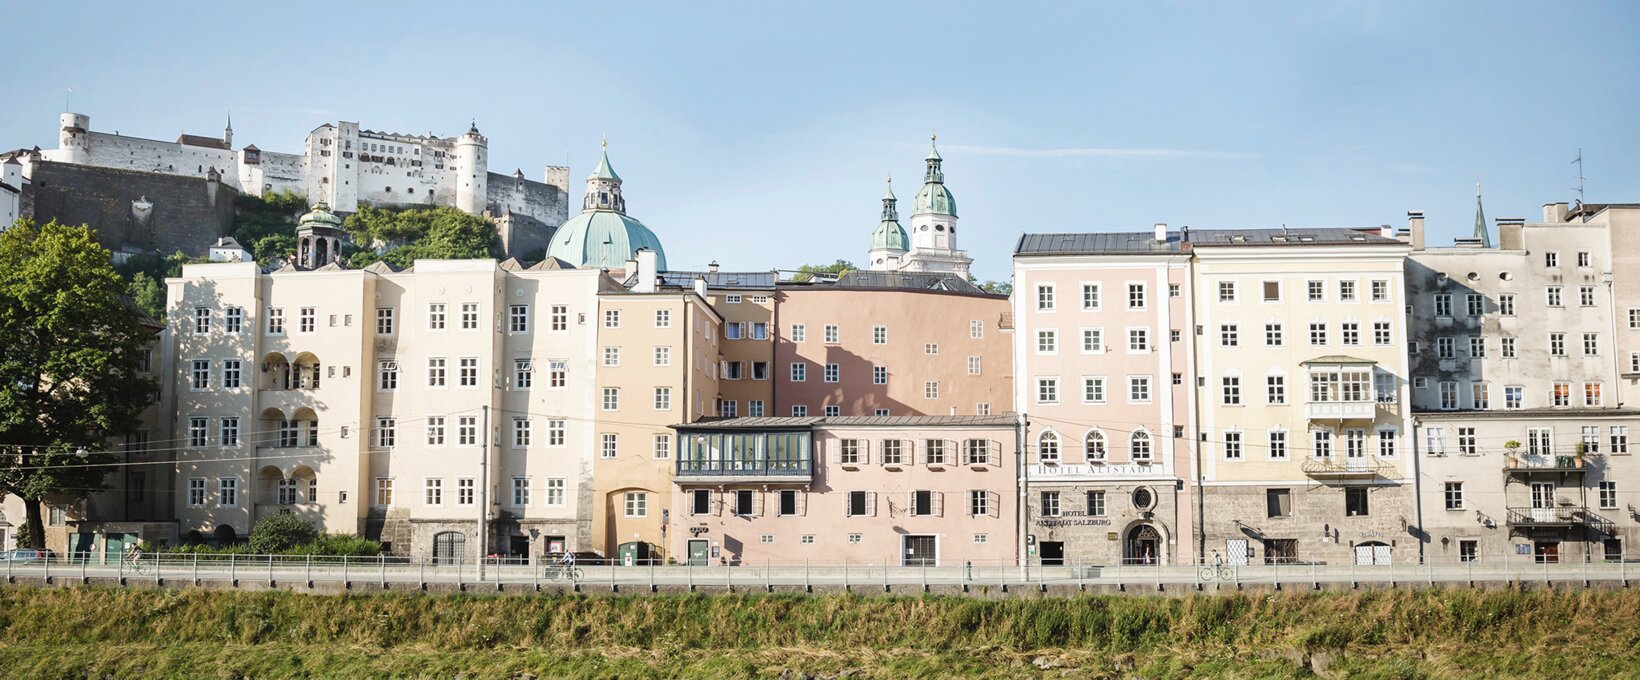 Rudolfskai view | Hotel Altstadt Salzburg